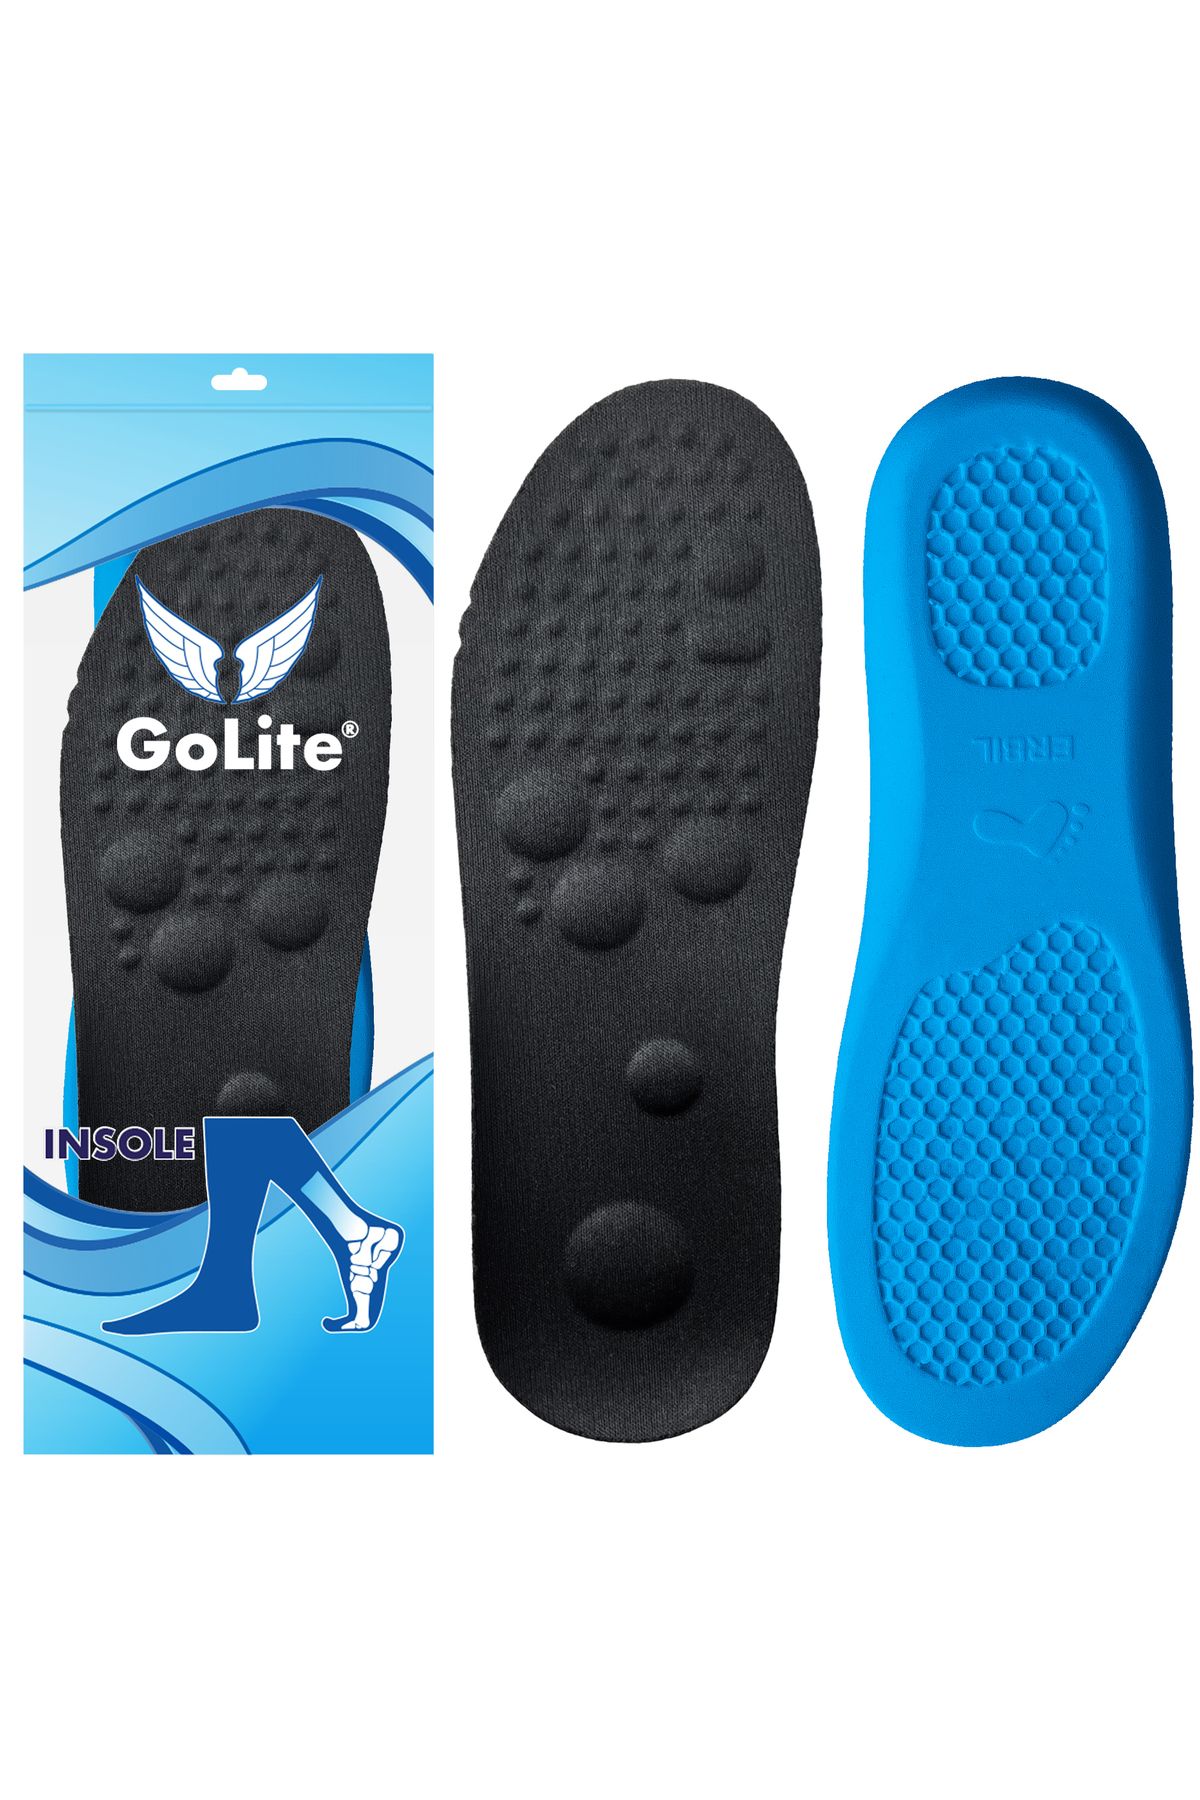 GoLite Iş Ayakkabısı Rahat Bot Tabanlığı, Memory Foam Hafızalı Ayakkabı Iç Tabanlık, Asker Tabanı - M09